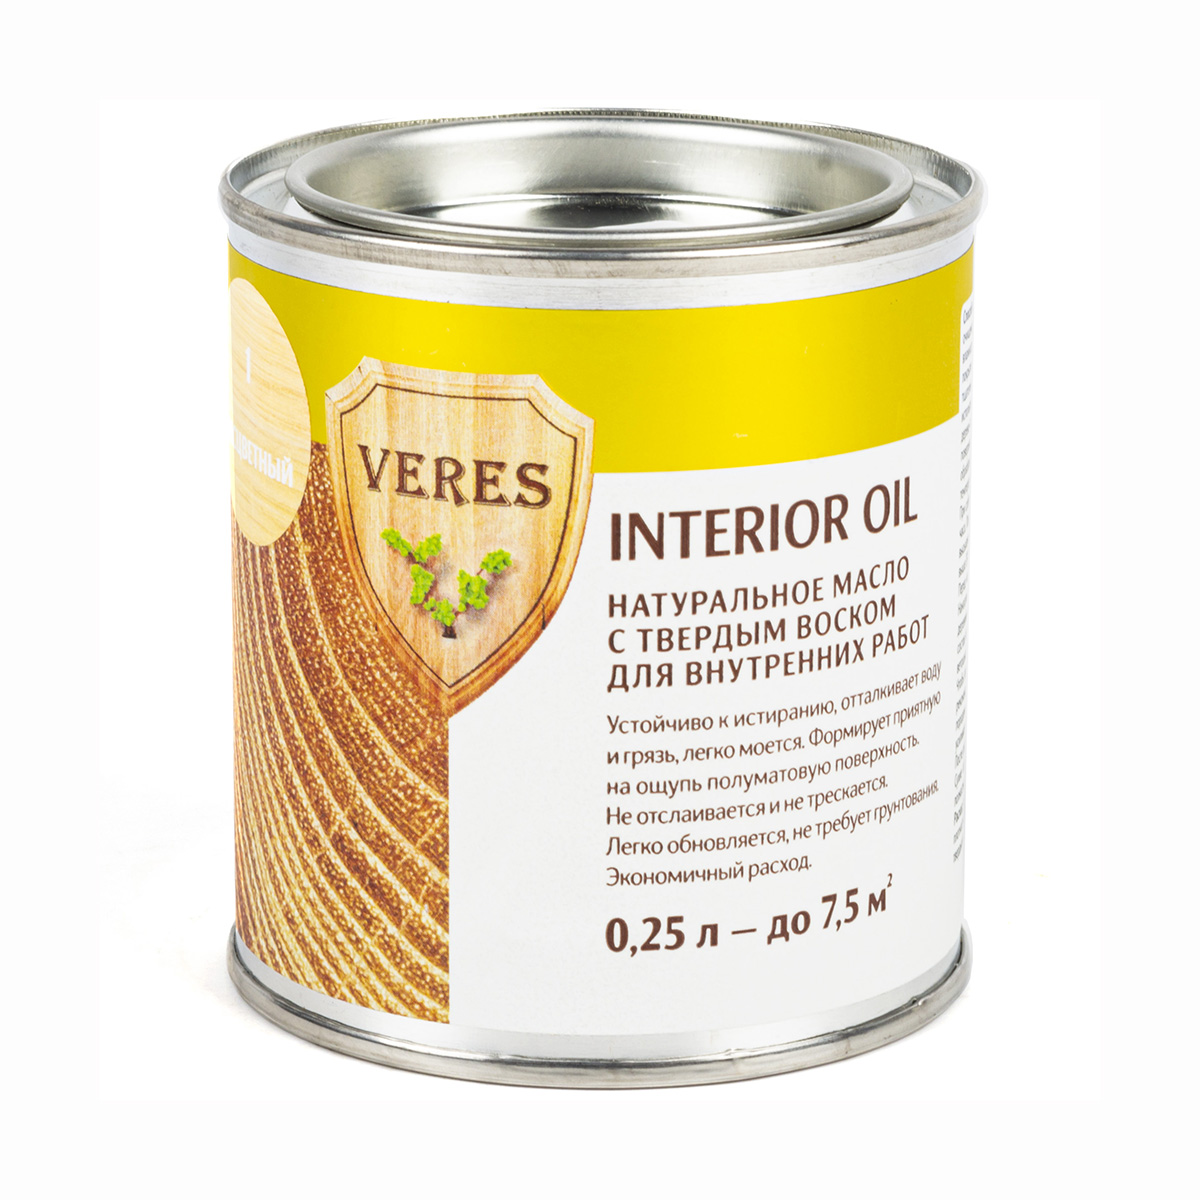 Верес масло для внутр. работ  "oil interior"  № 1 бесцветный  0,25 л (1/6) "veres"